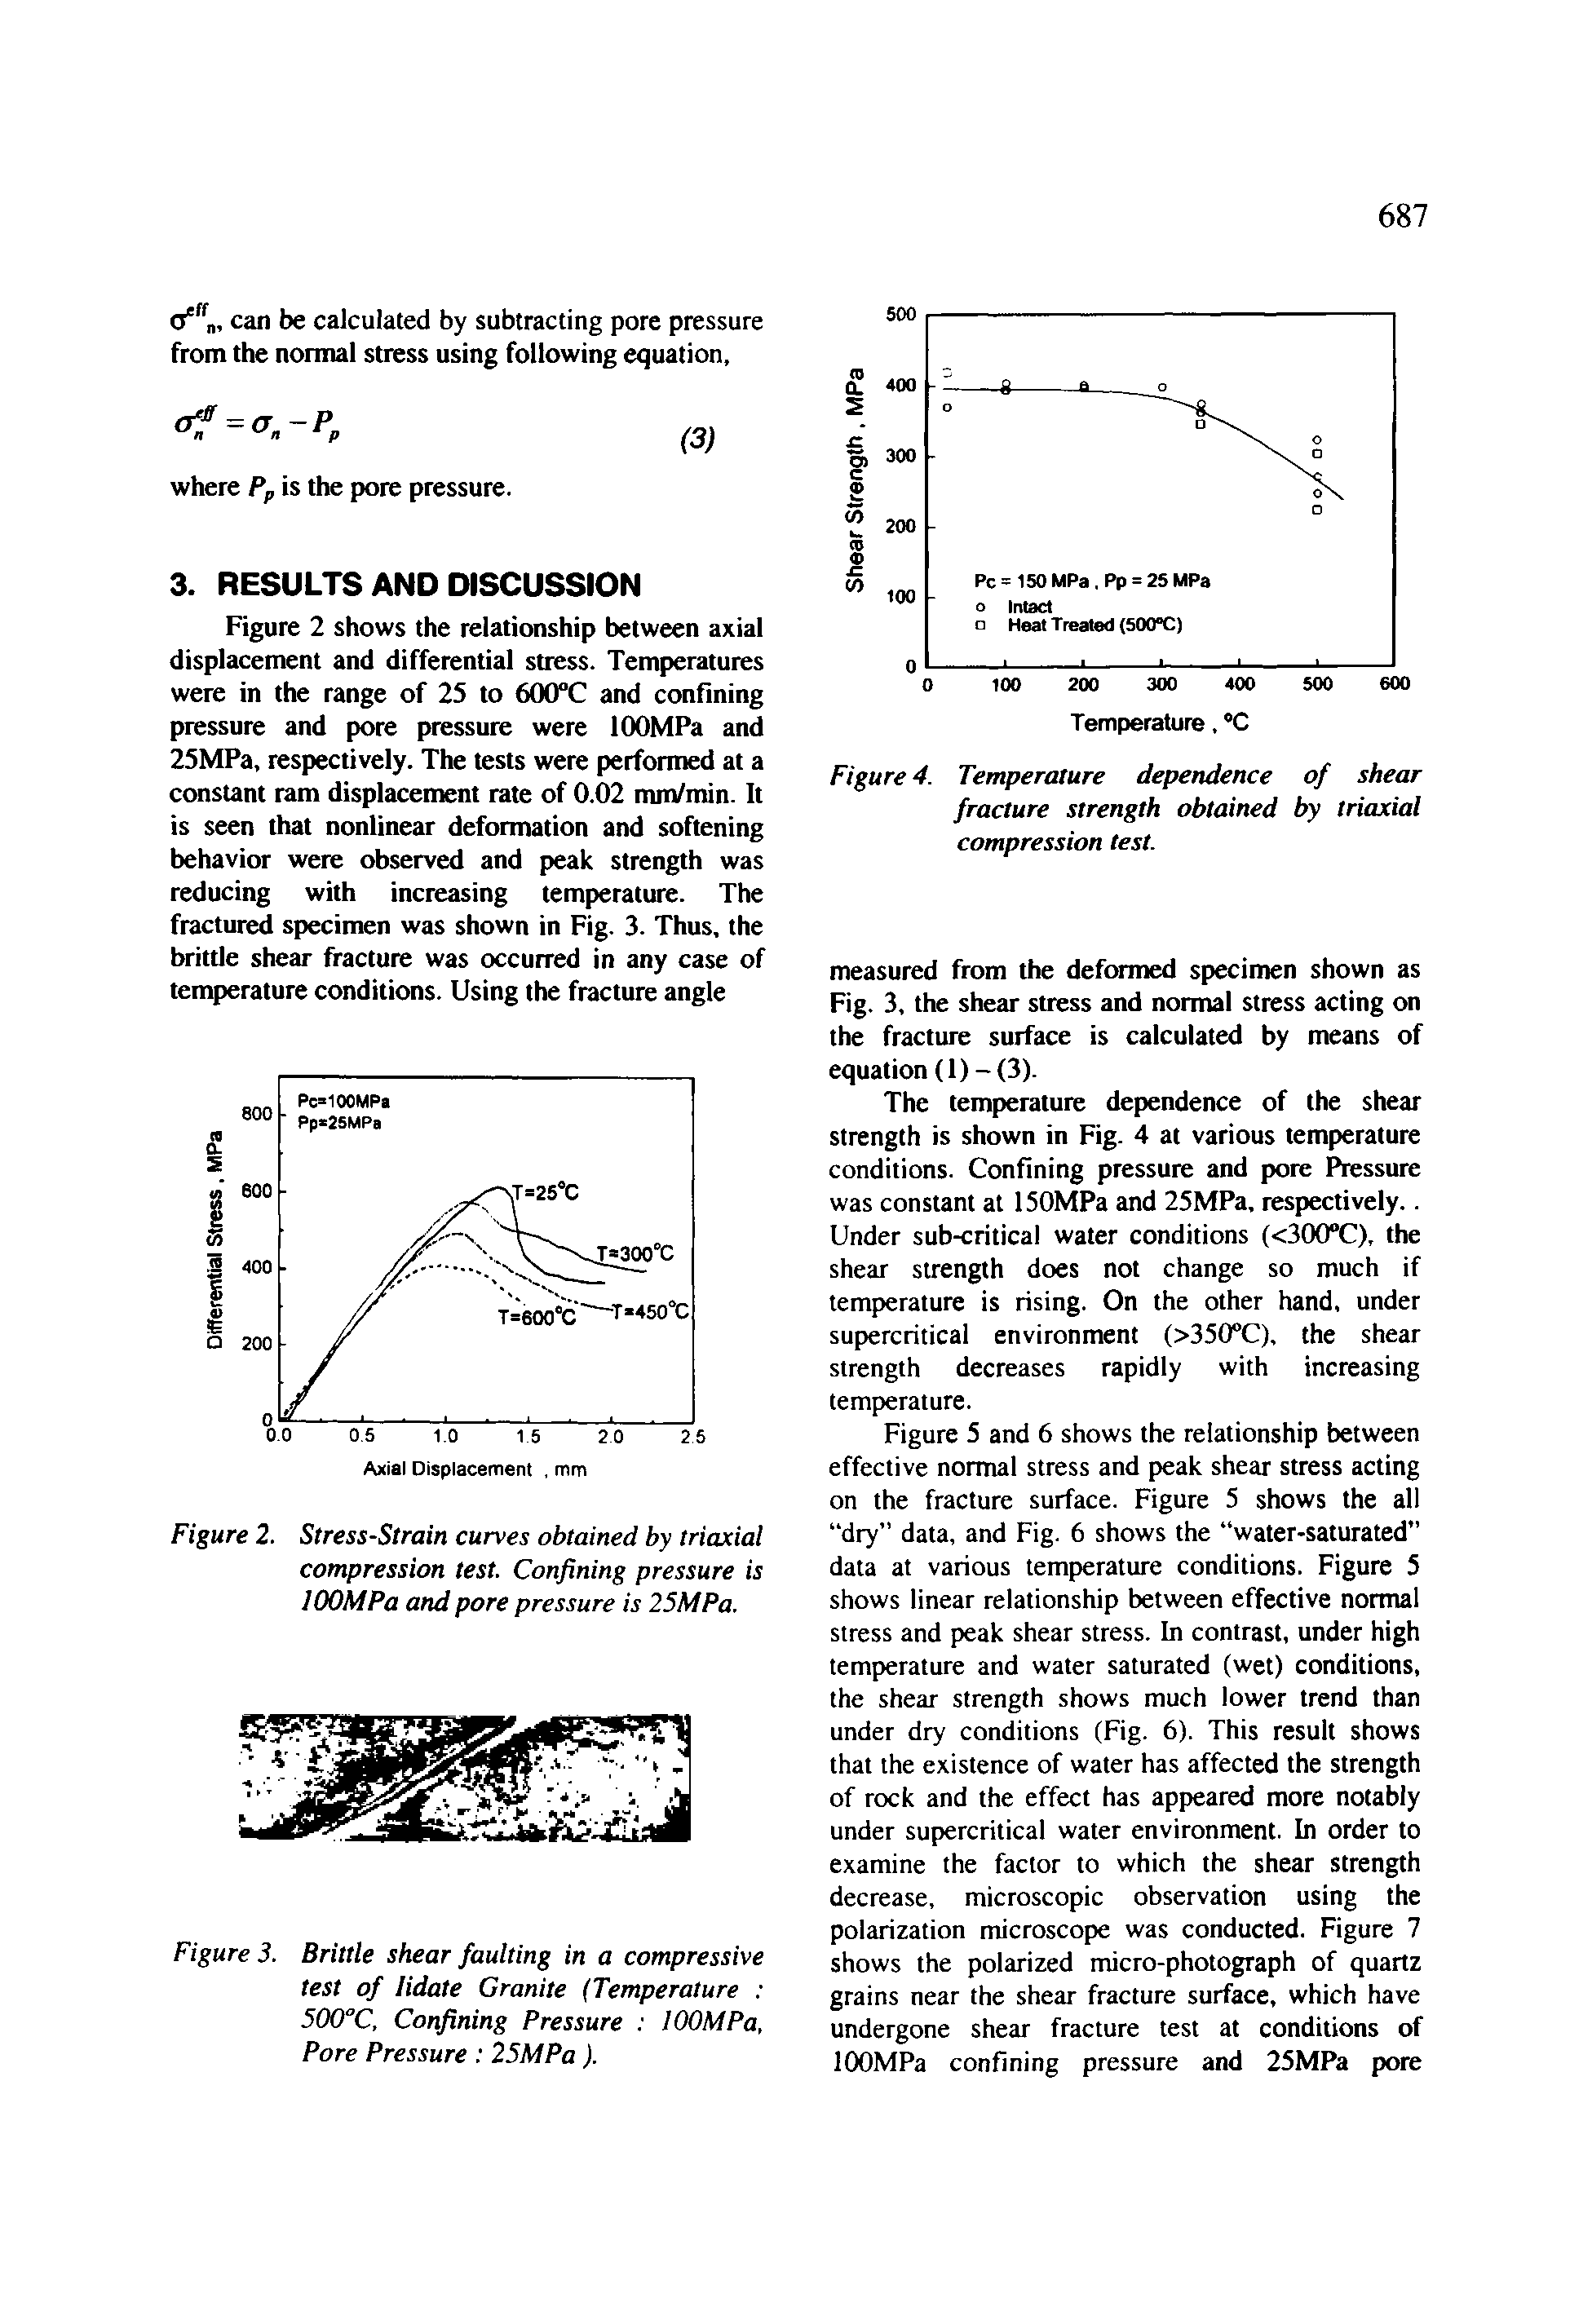 Figure 3. Brittle shear faulting in a compressive test of lidate Granite (Temperature 500 C, Confining Pressure lOOMPa, Pore Pressure 25MPa).